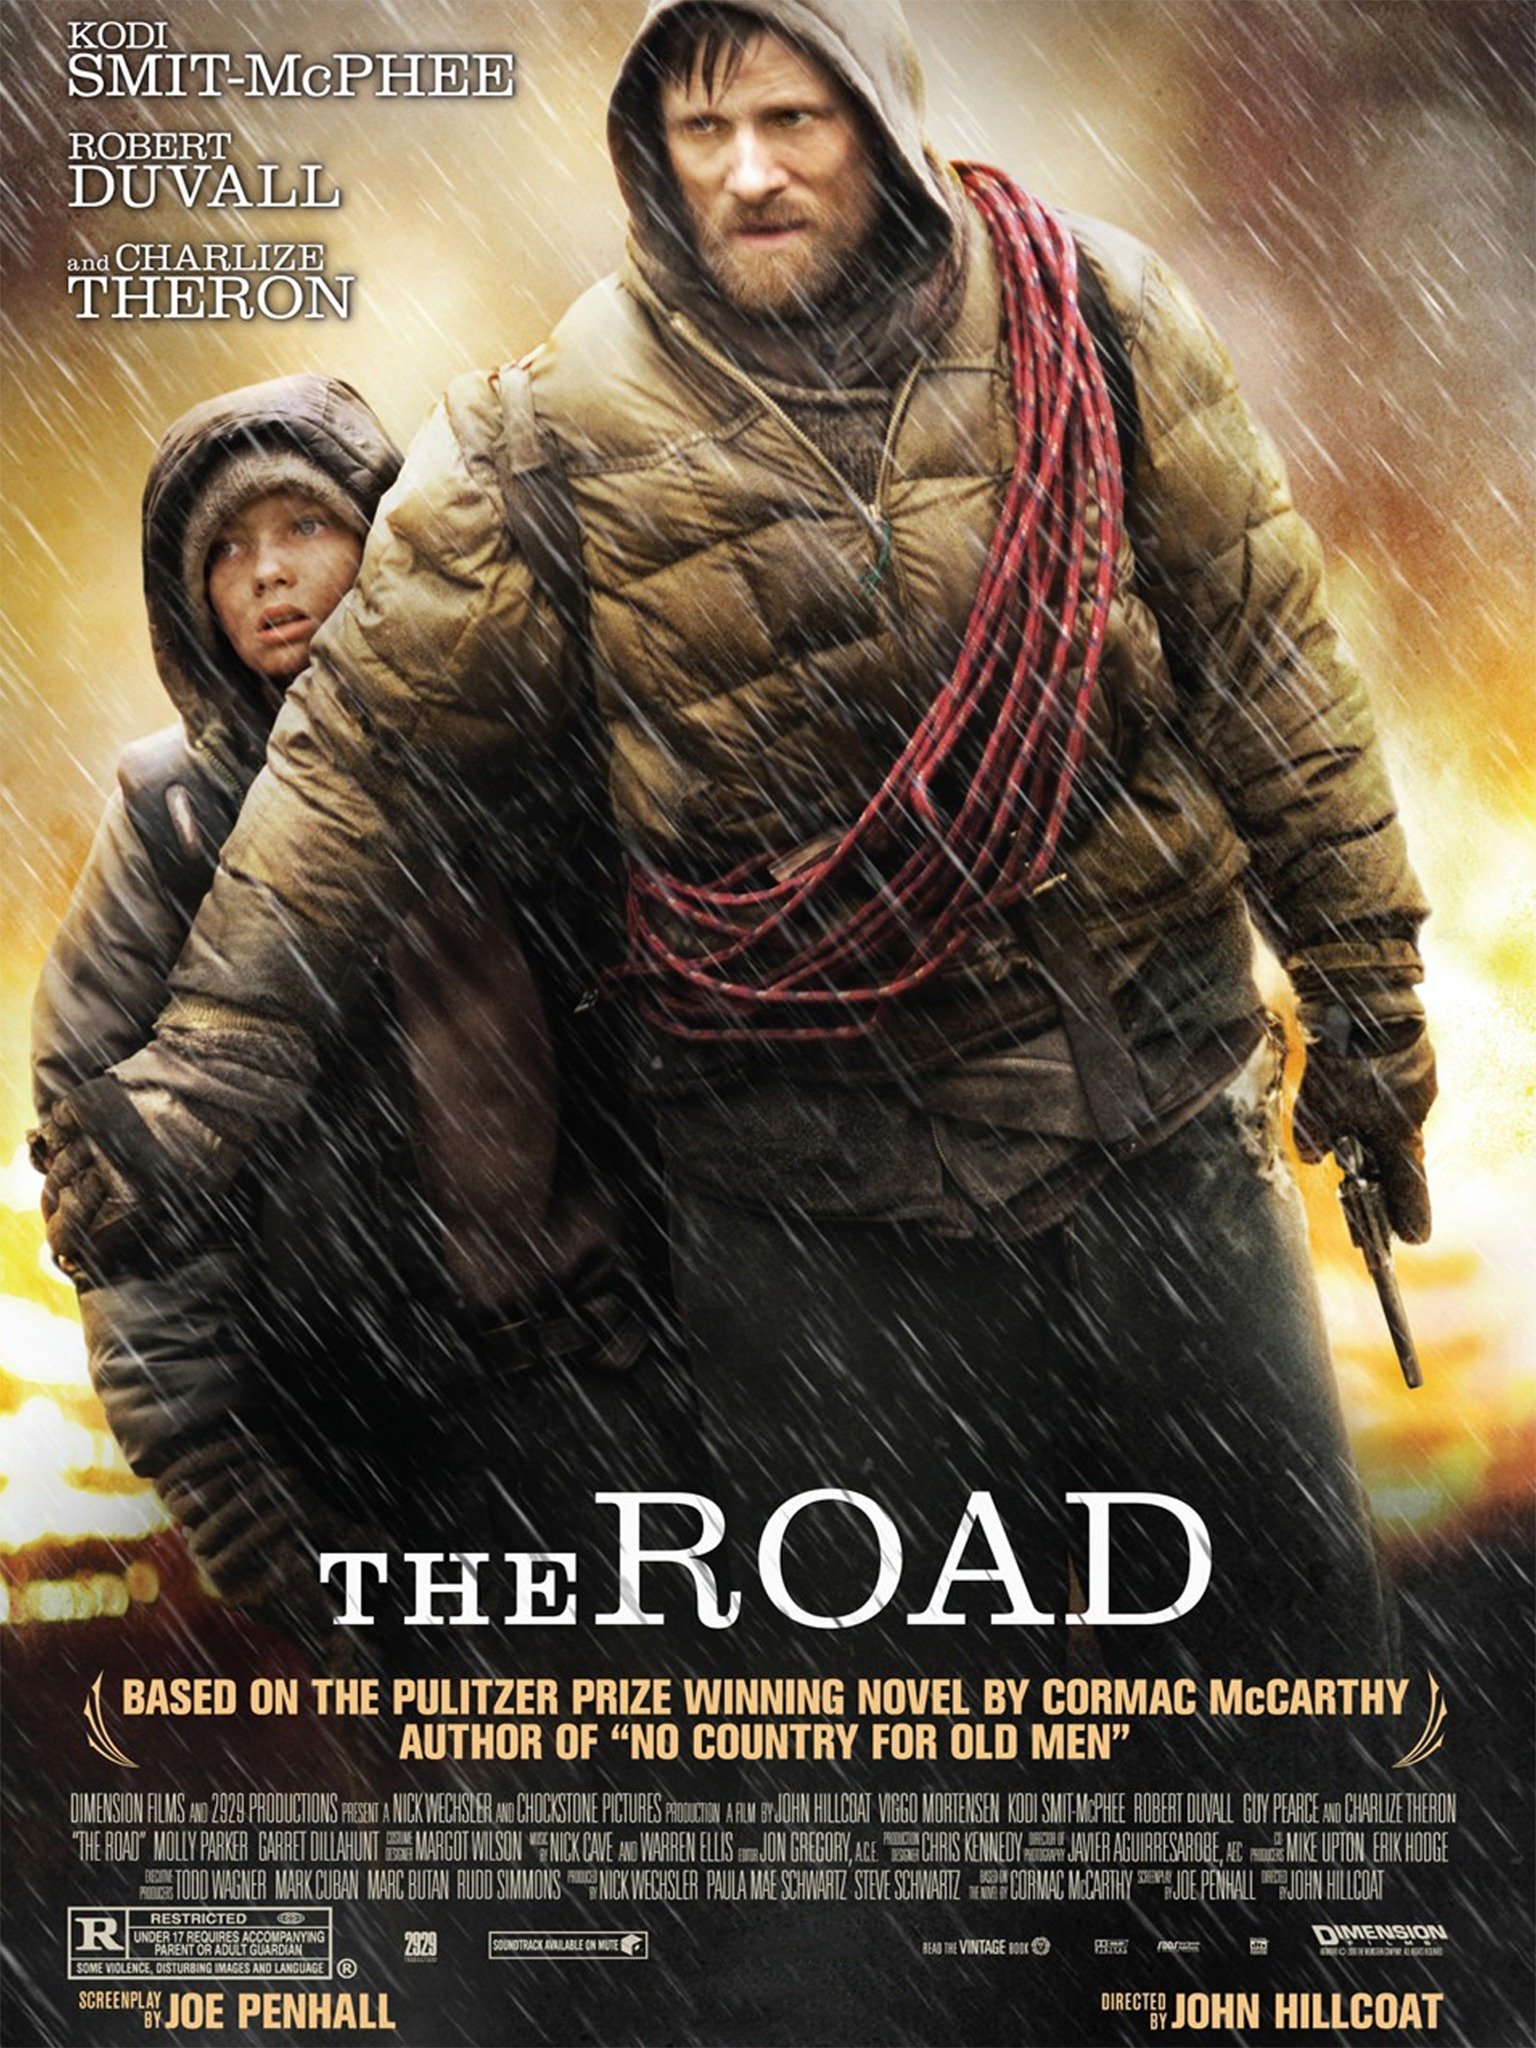 ดูหนังออนไลน์ฟรี The Road (2009) เดอะโร้ด ข้ามแดนฝ่าอำมหิต หนังเต็มเรื่อง หนังมาสเตอร์ ดูหนังHD ดูหนังออนไลน์ ดูหนังใหม่